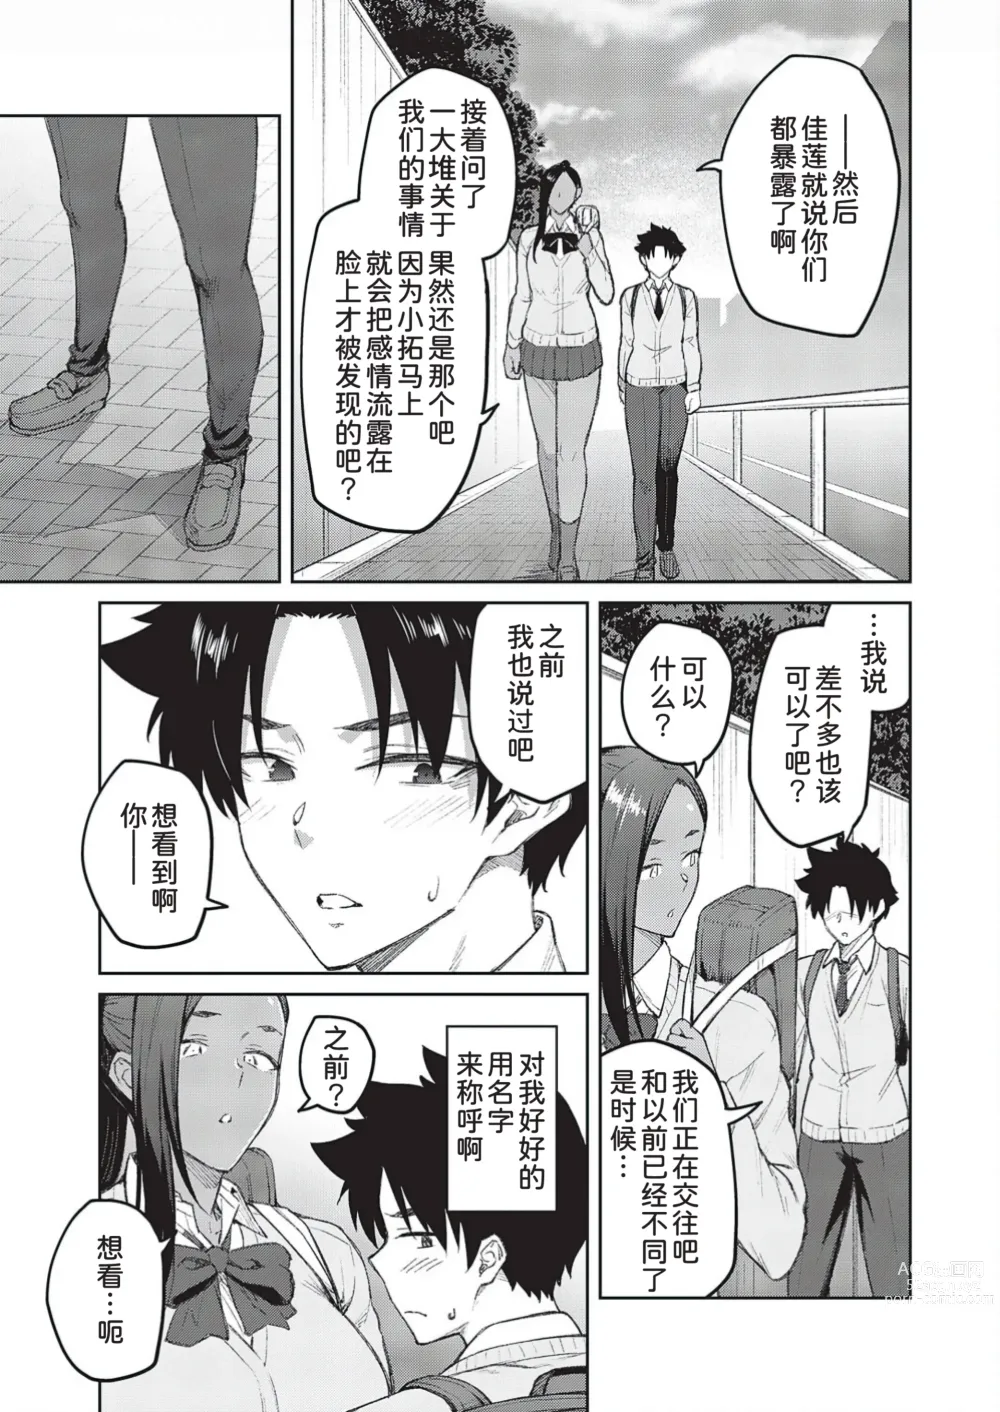 Page 6 of manga Tachiaoi 3